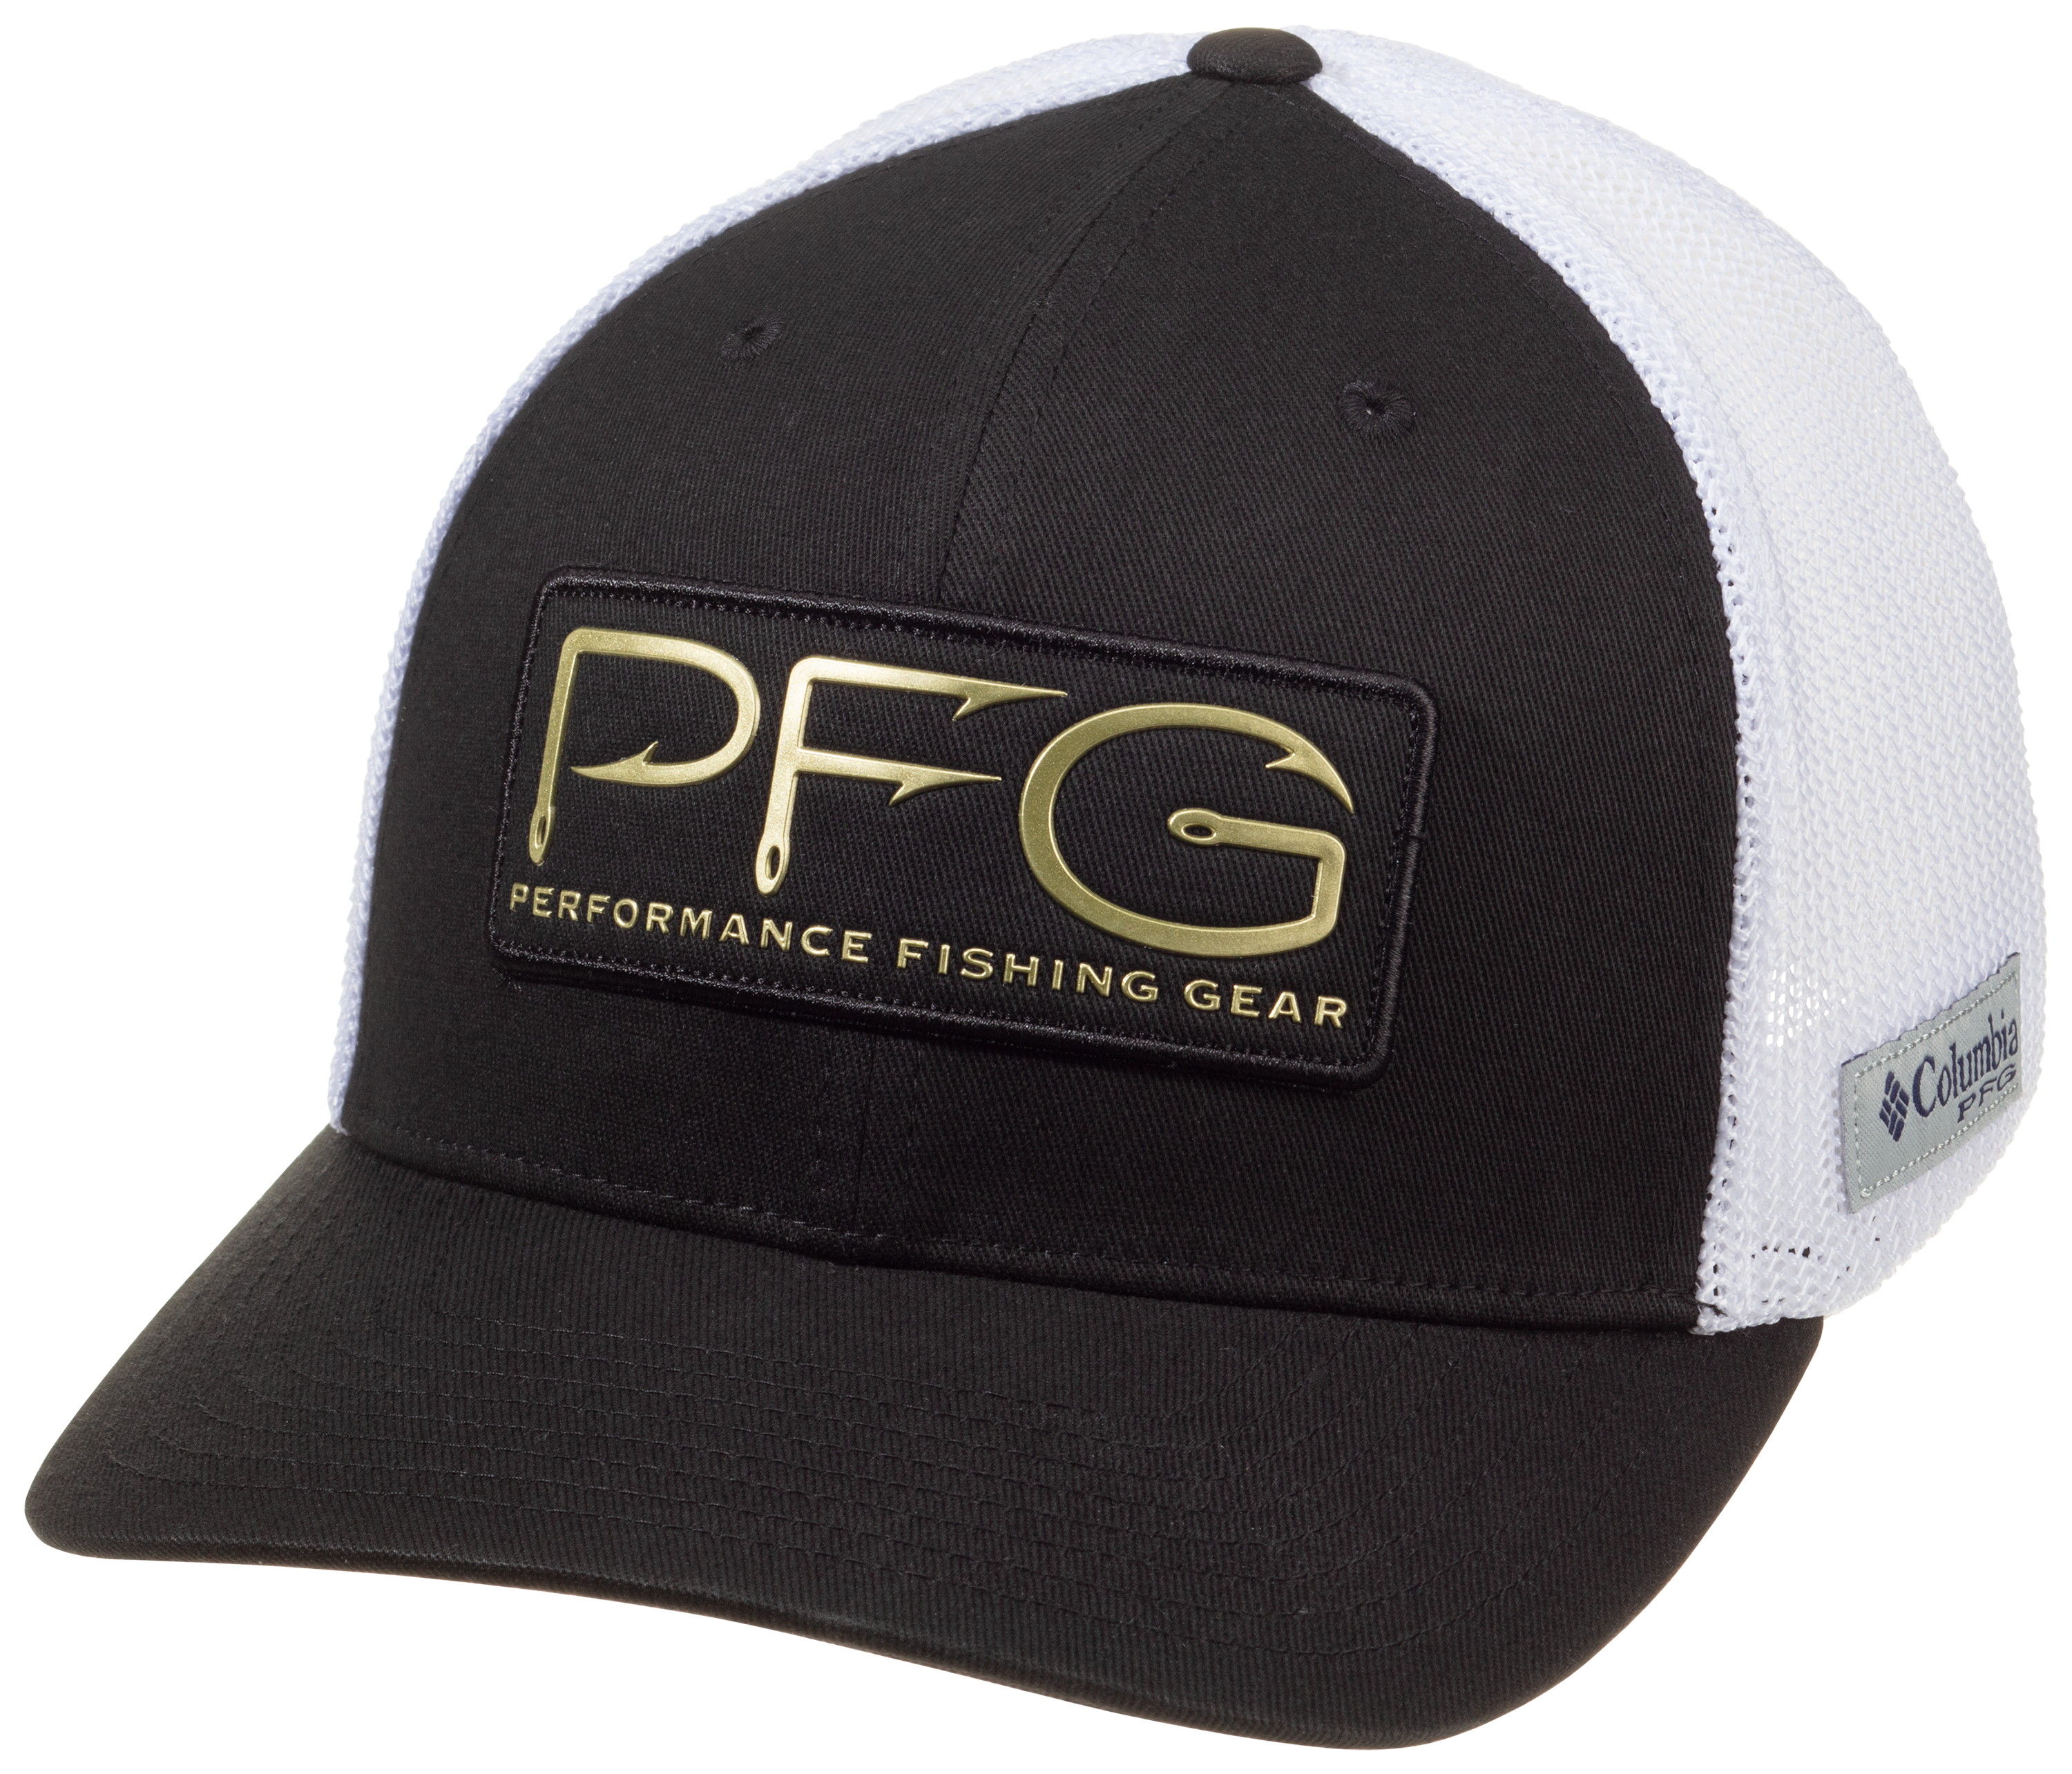 Mens hat Columbia PFG Fishing Hat Gray Black Size L/XL